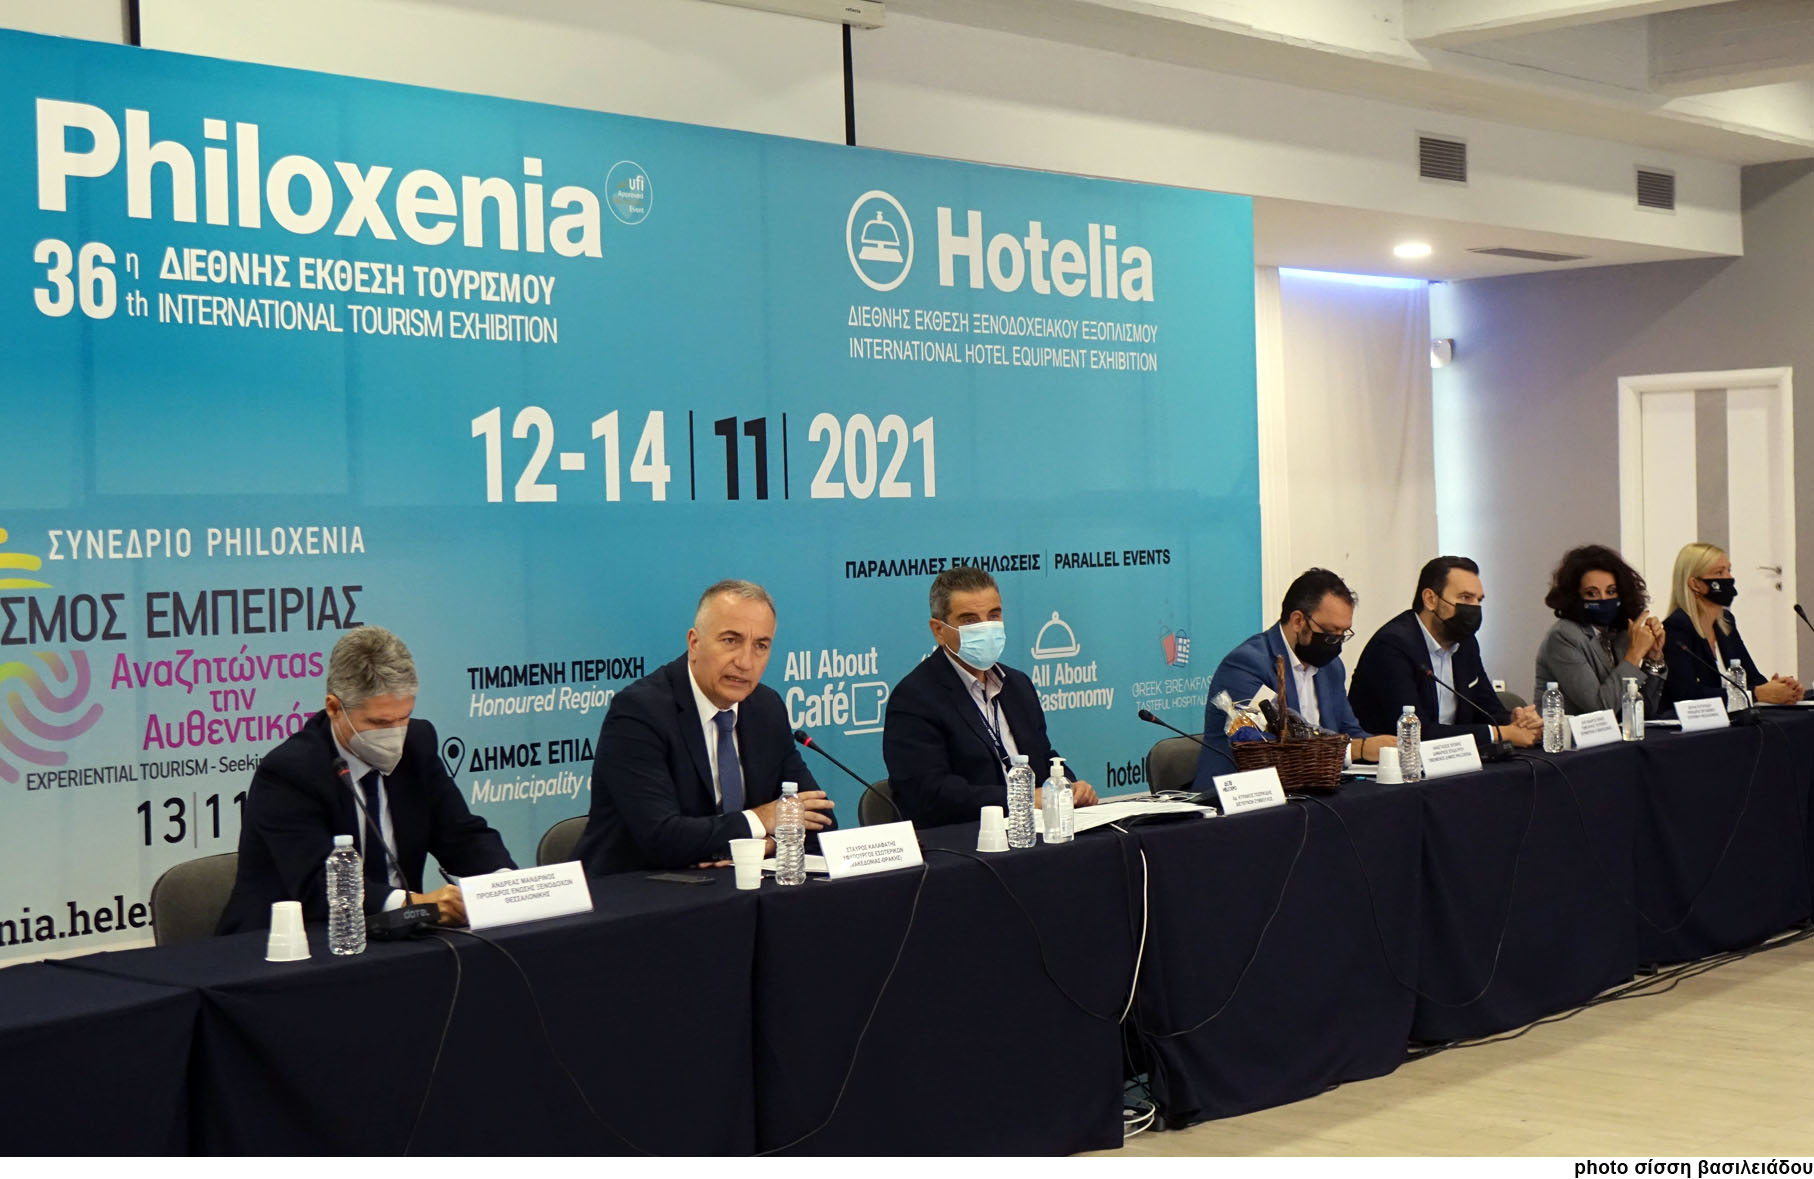 Μήνυμα αισιοδοξίας  από το εκθεσιακό τουριστικό «δίδυμο» Philoxenia-Hotelia, που επιστρέφει δυναμικά στις 12 με 14 Νοεμβρίου